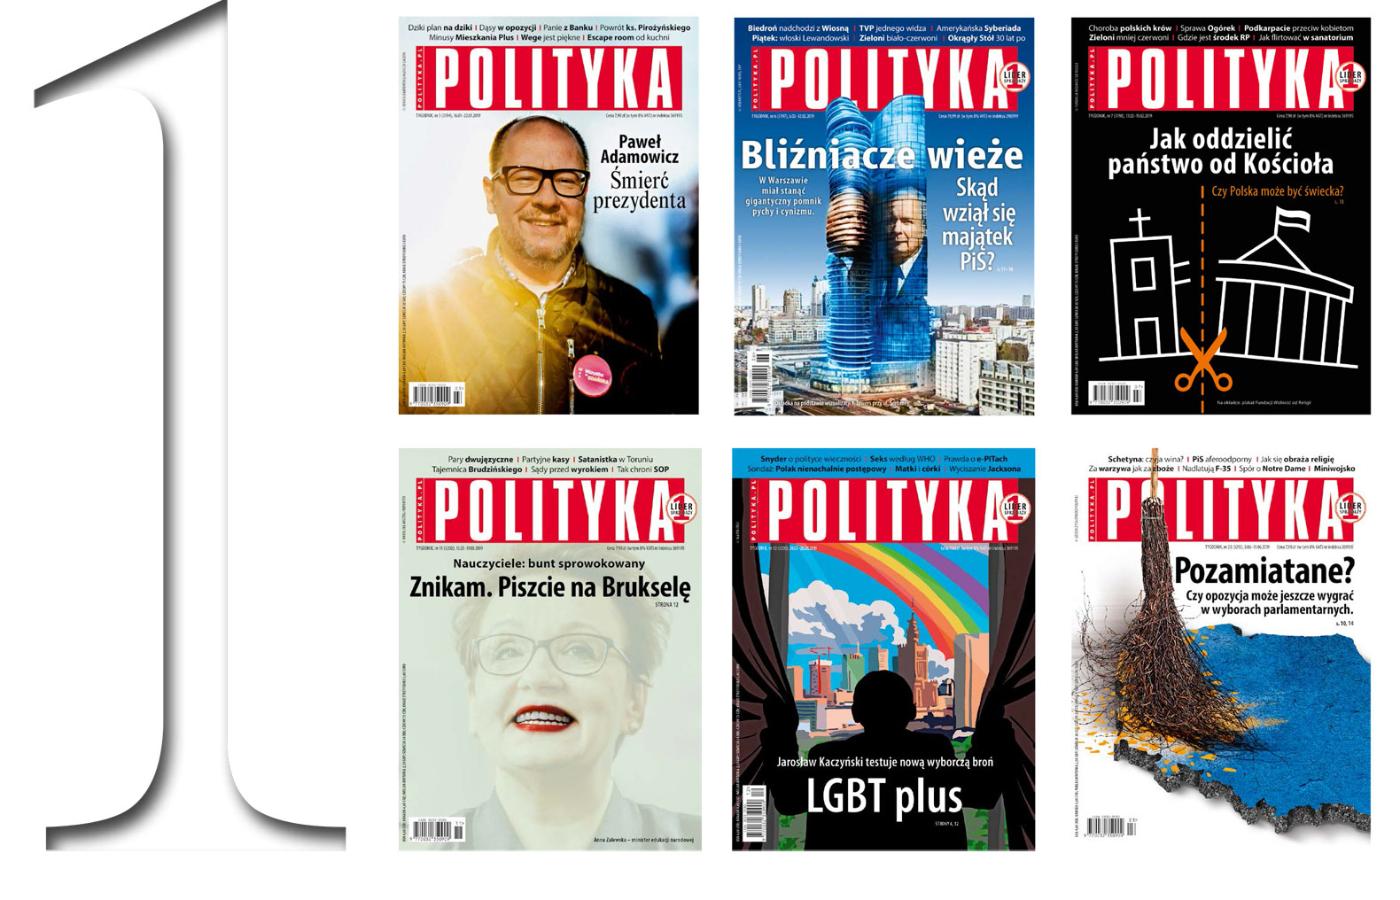 W pierwszym półroczu tego roku POLITYKA sprzedawała średnio 94,8 tys. egzemplarzy.